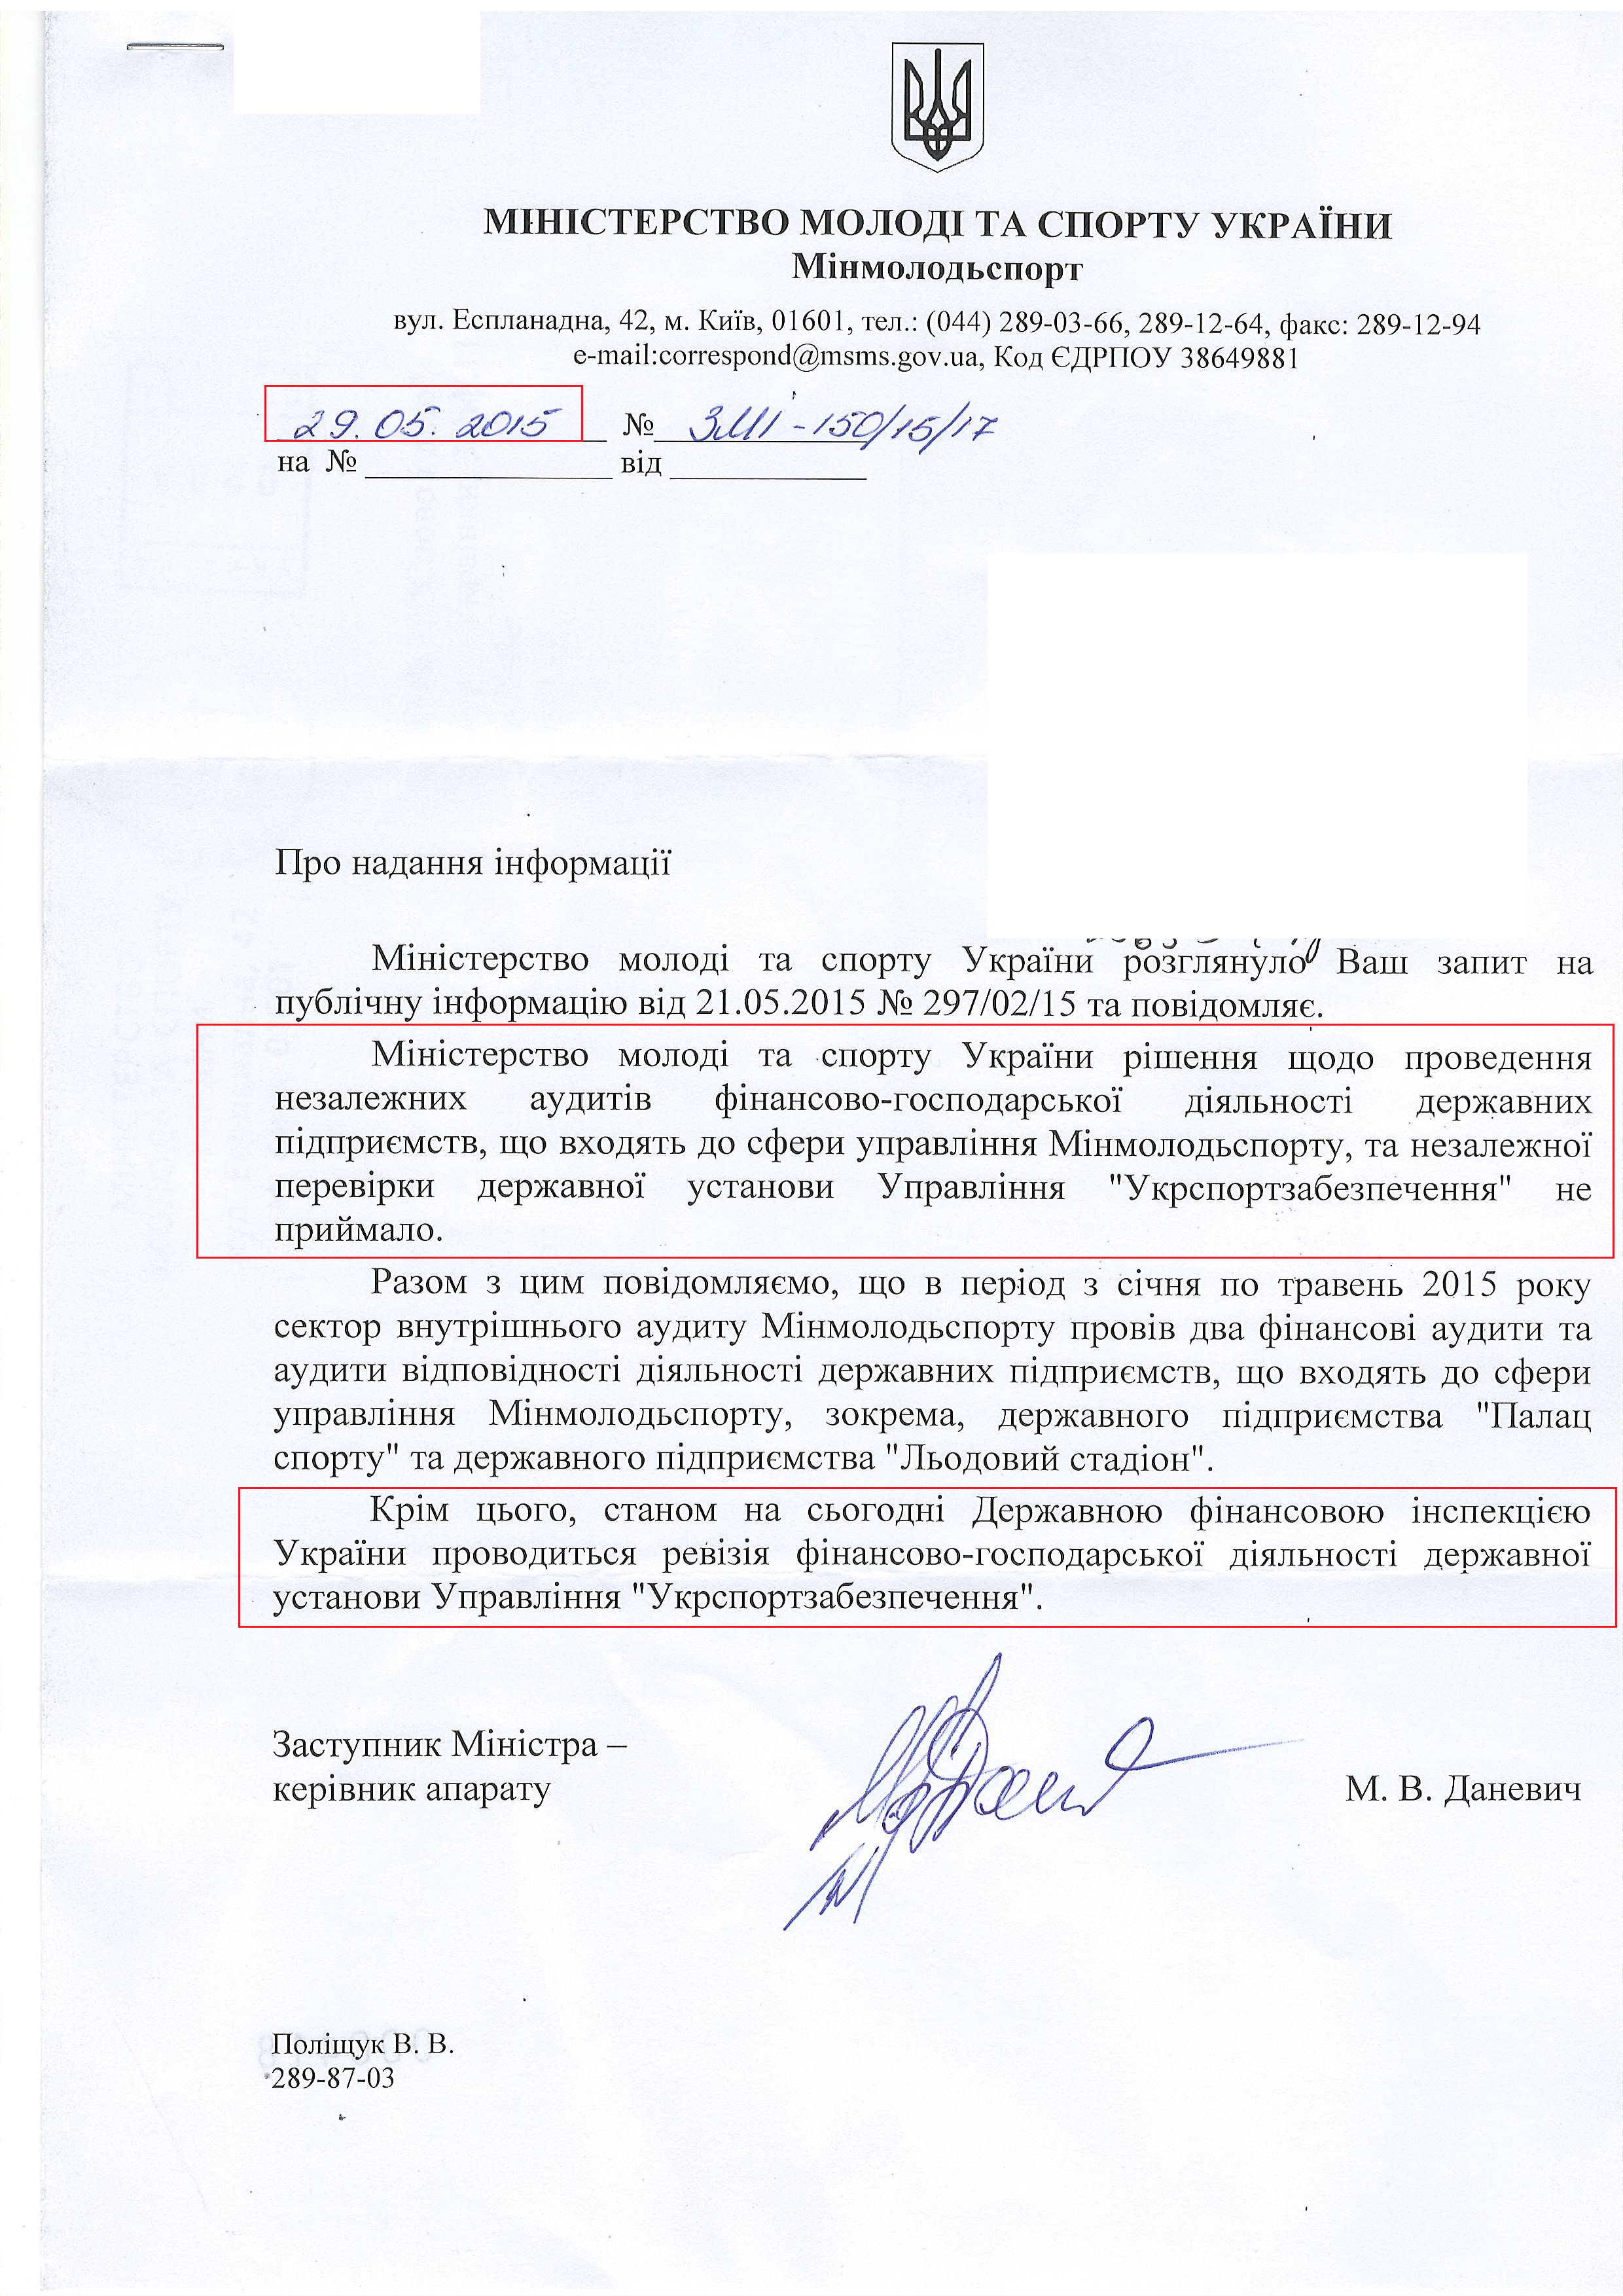 лист міністерства молоді та спорту України від 29 трравня 2015 року